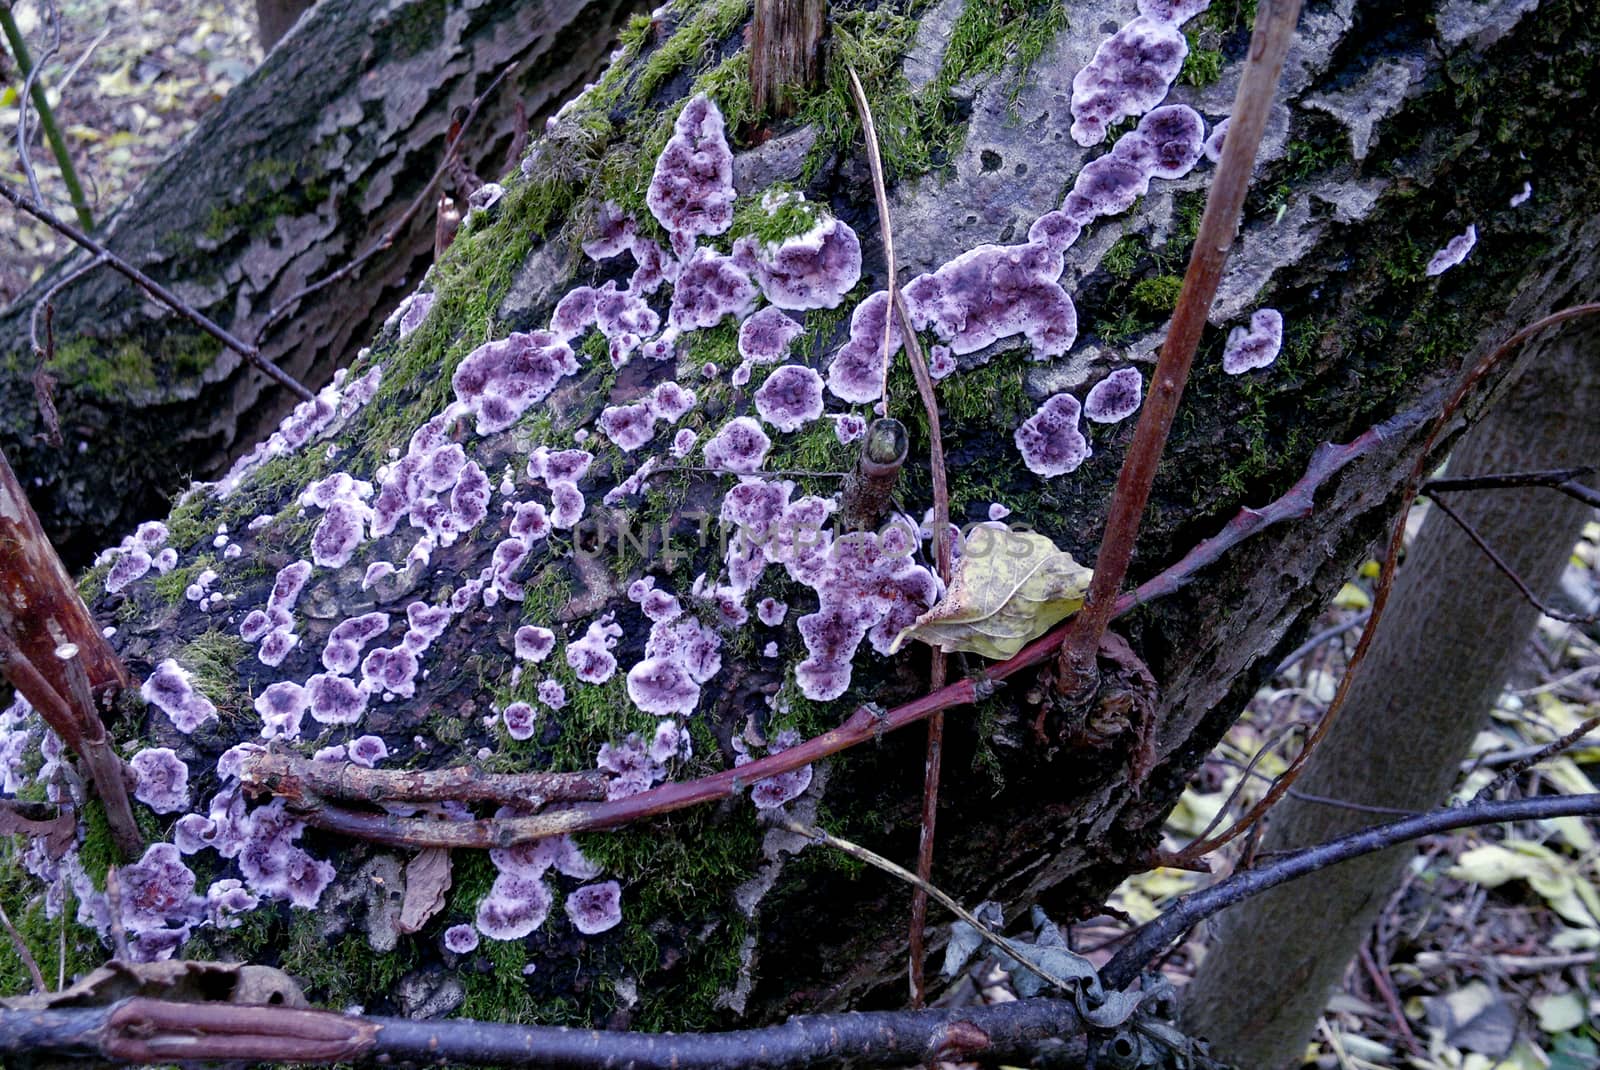 Colored lichen